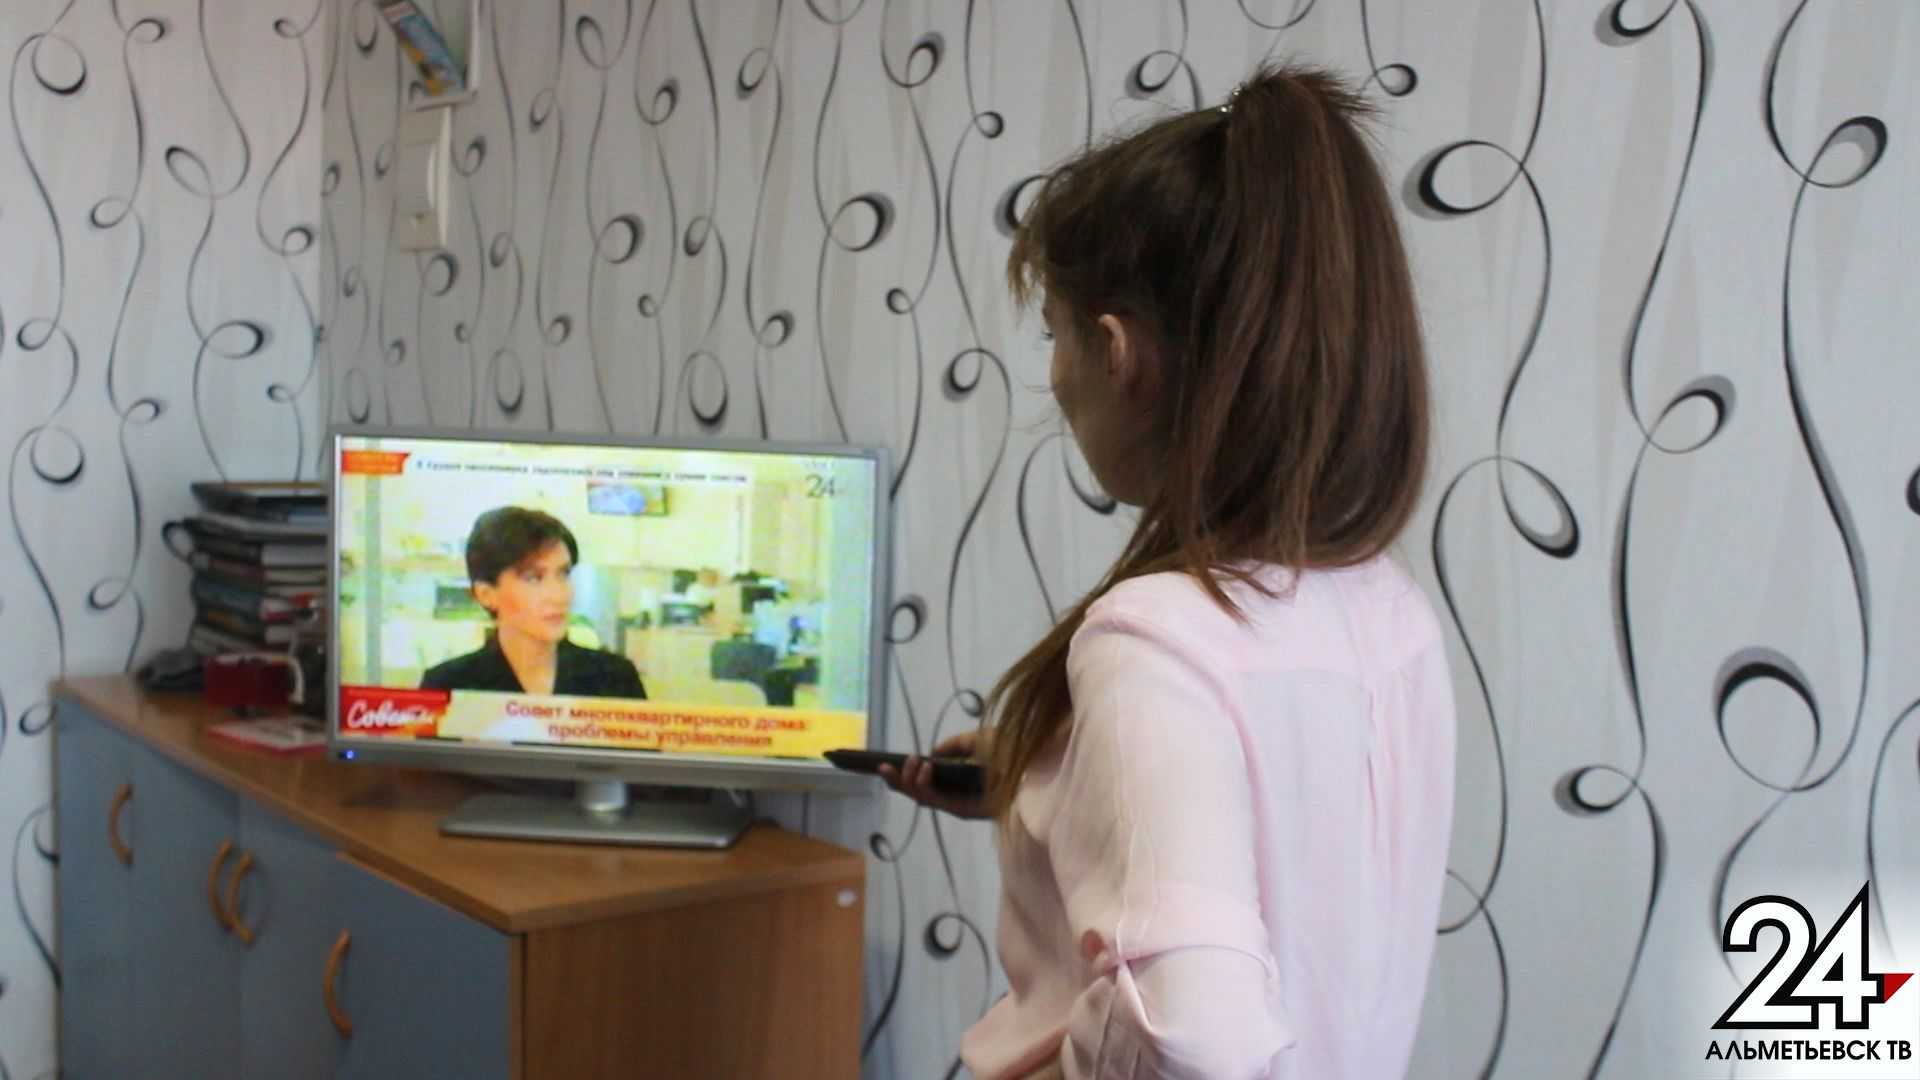 Отключение аналогового вещания не станет проблемой для абонентов кабельного телевидения в Татарстане